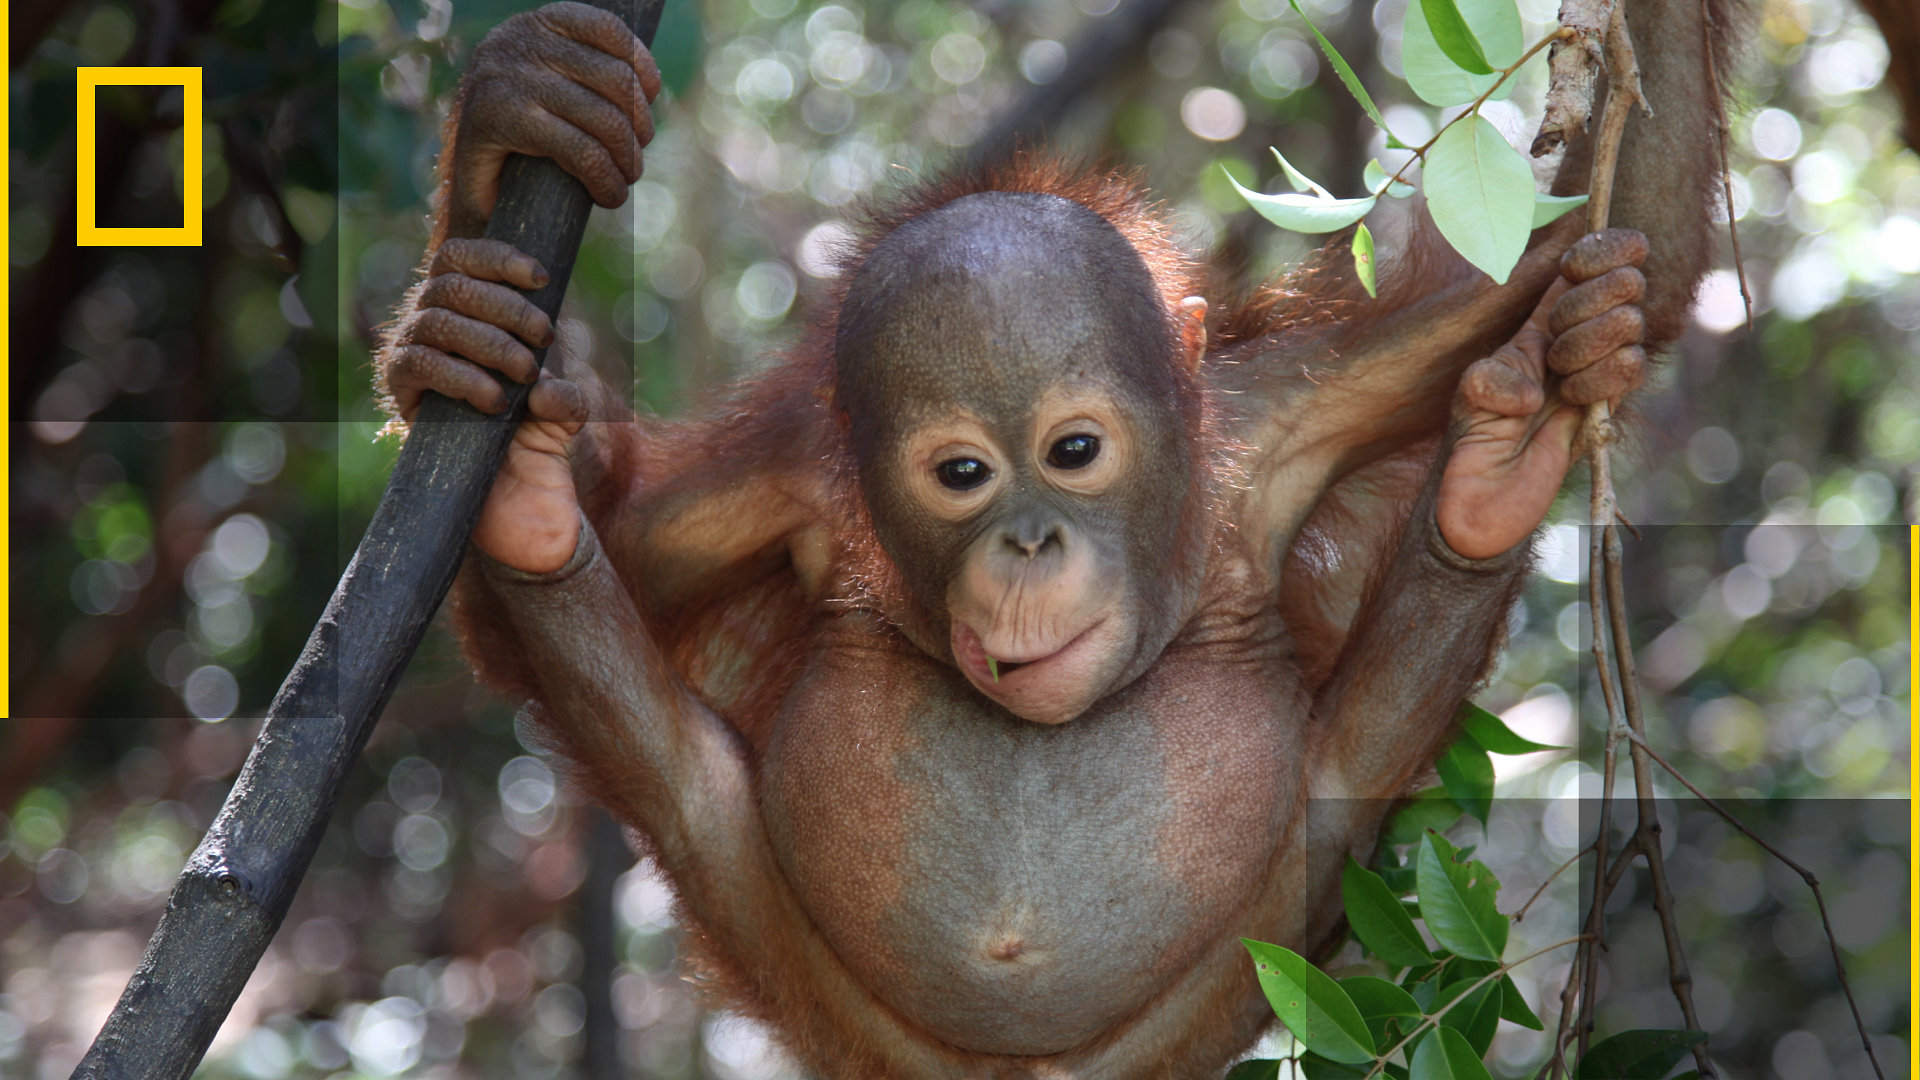 Operasjon orangutang